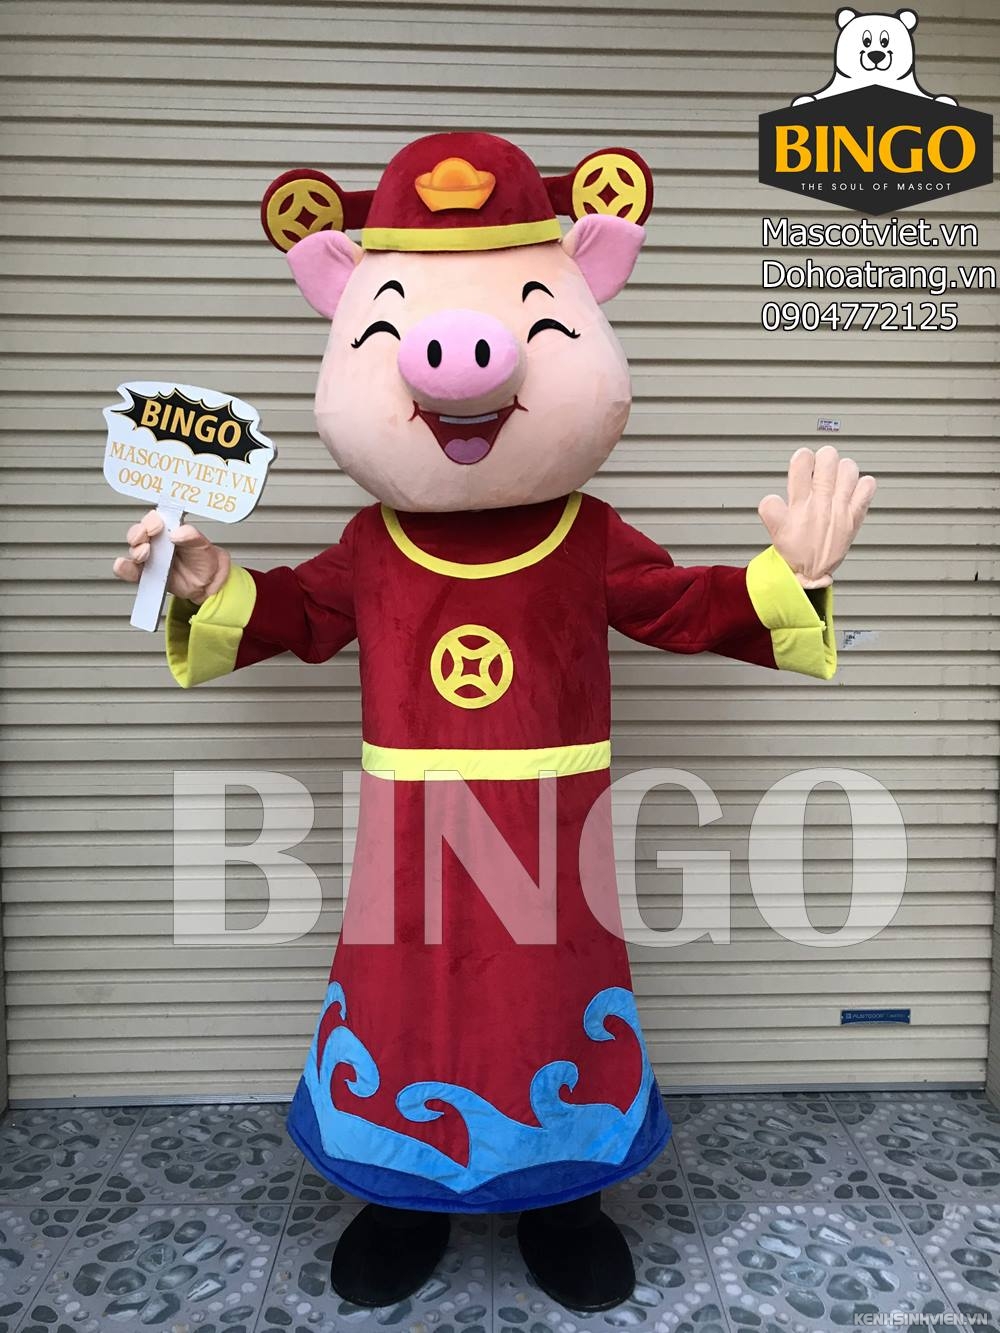 mascot-heo-than-tai-nam-bingo-costumes-0904772125.jpg